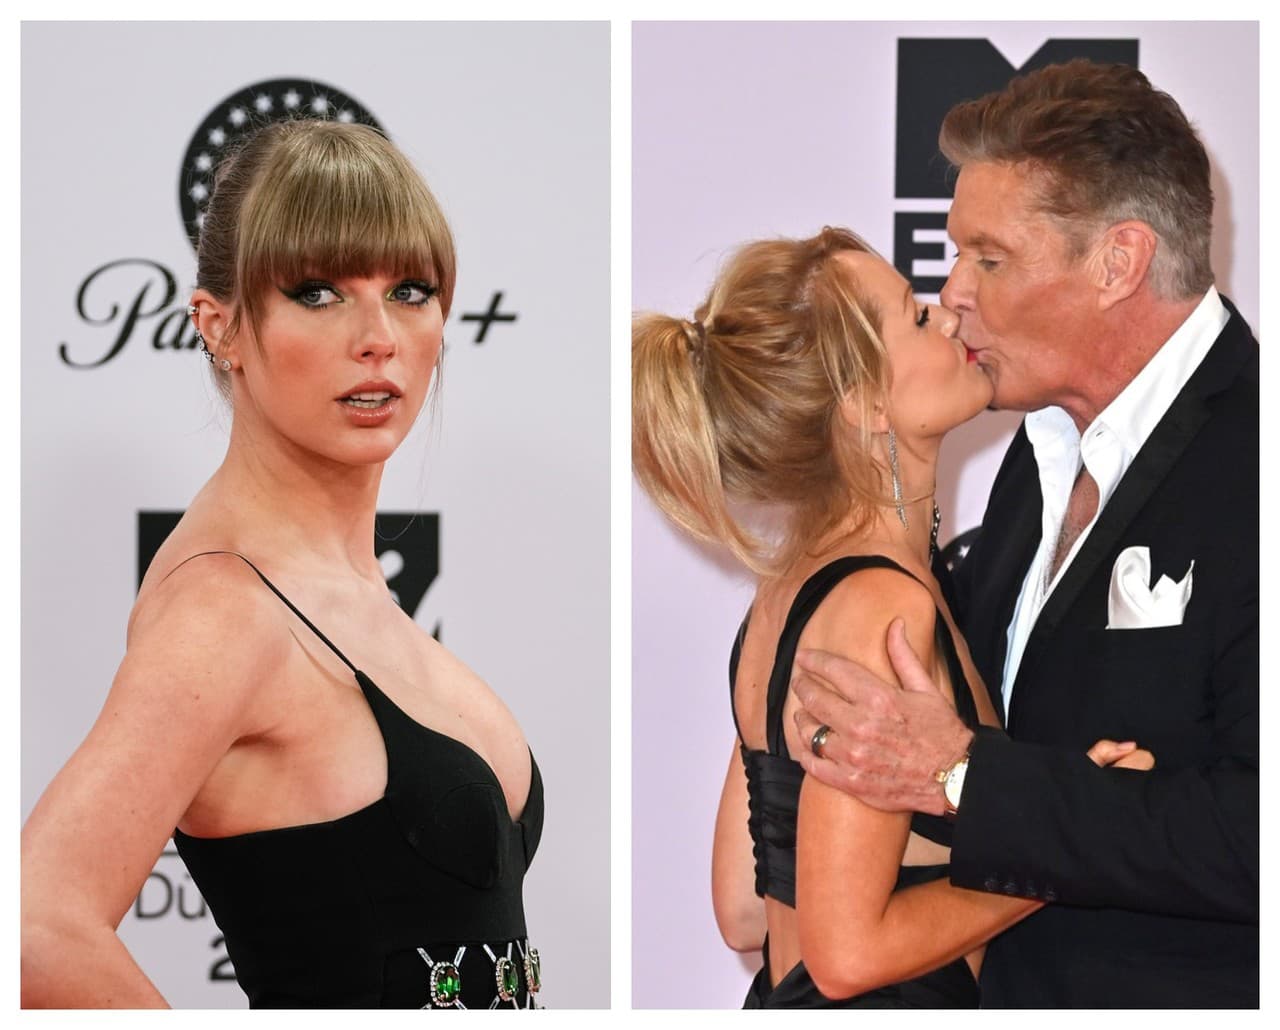 Odovzdávania cien sa zúčastnili aj Taylor Swift a David Hasselhoff so svojou láskou. 